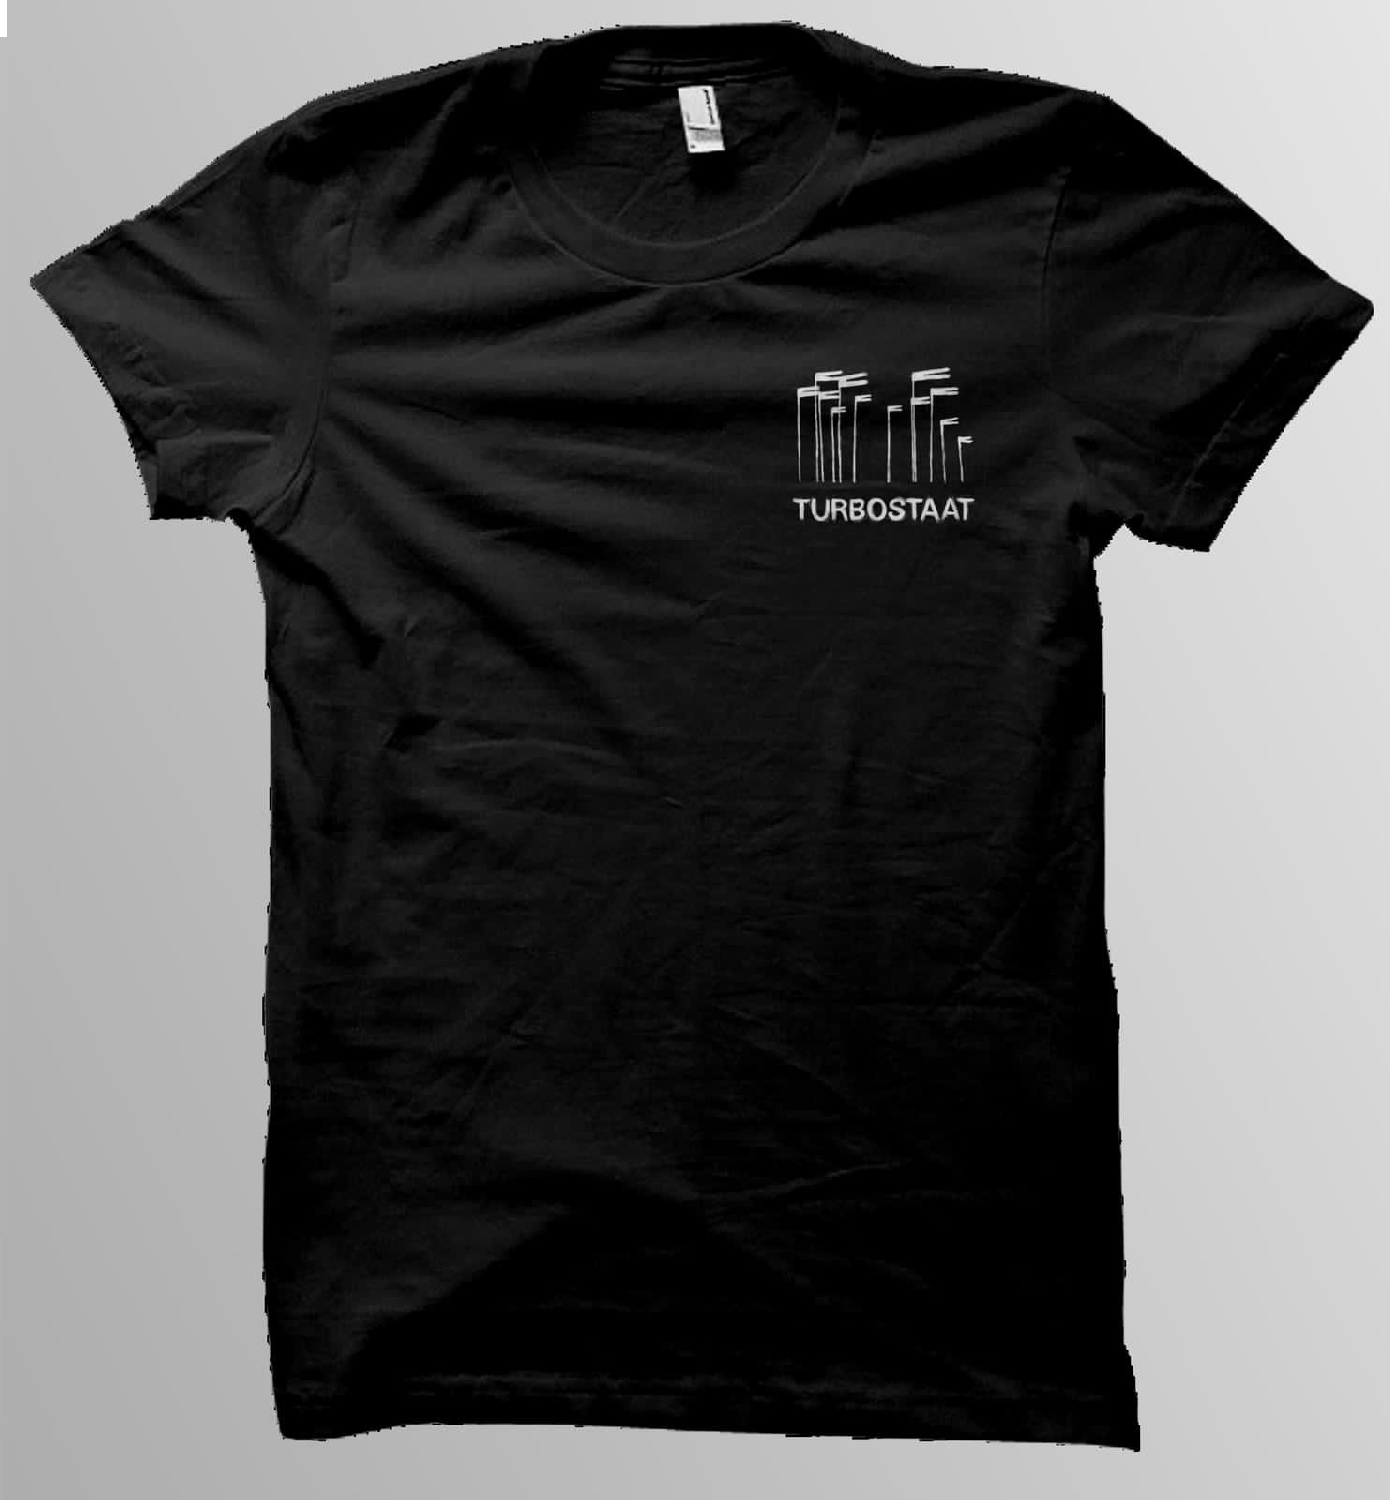 Turbostaat Windhose Shirt Männer T-Shirt, schwarz